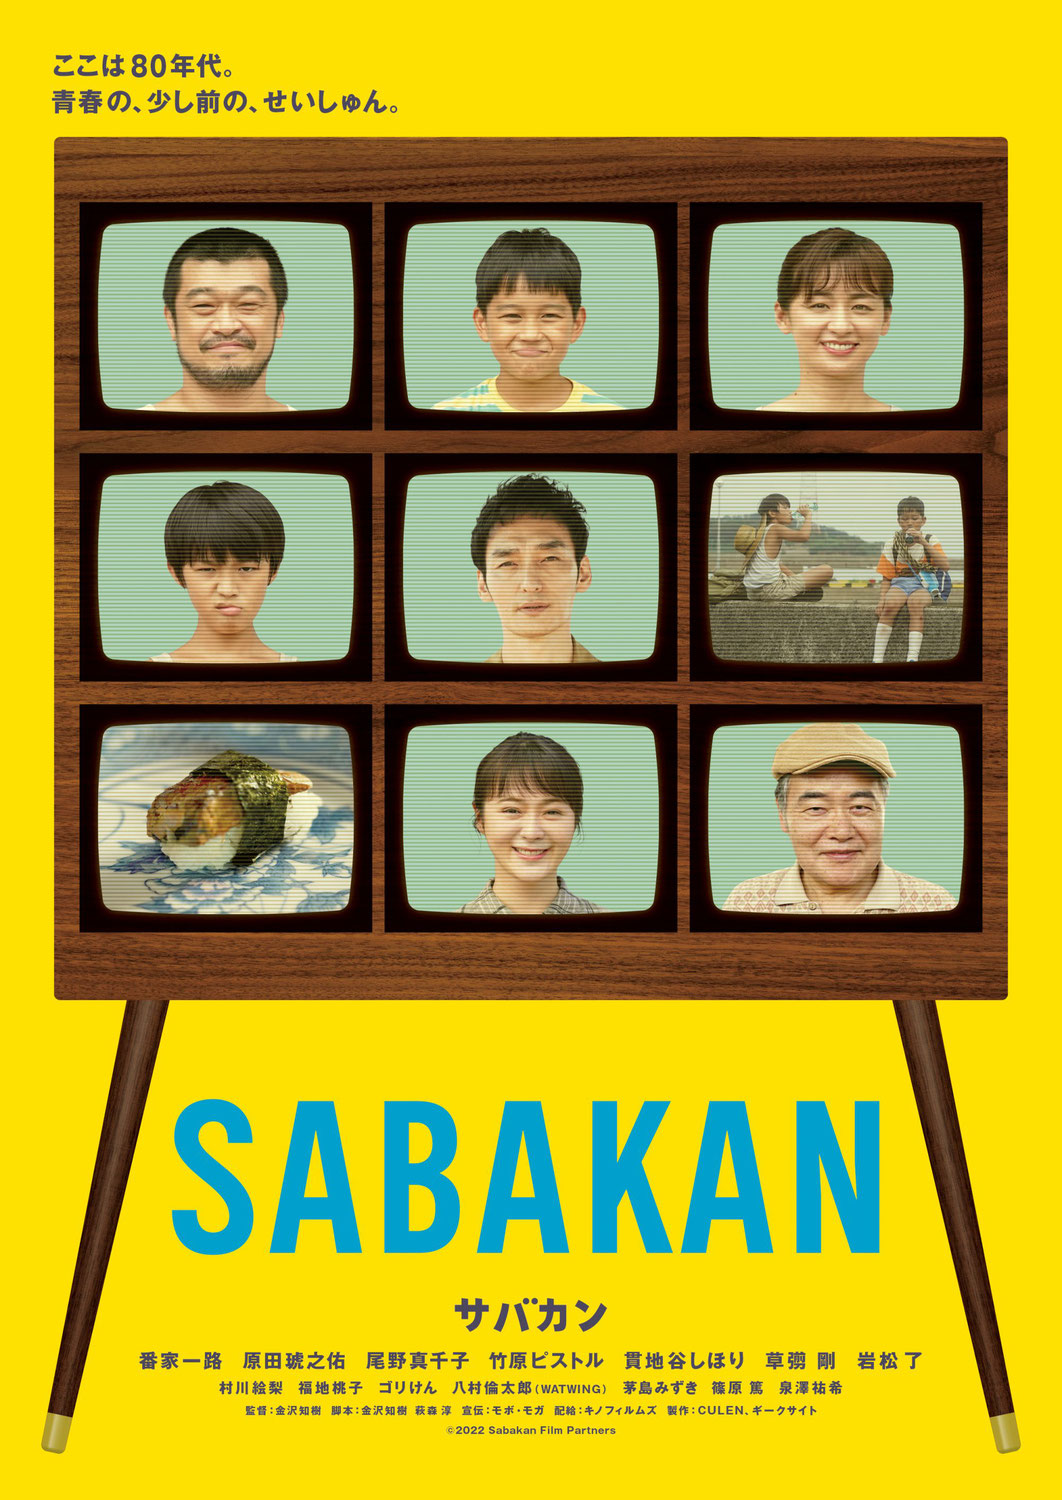 原田琥之佑出演の映画『サバカン SABAKAN』が台湾にて上映